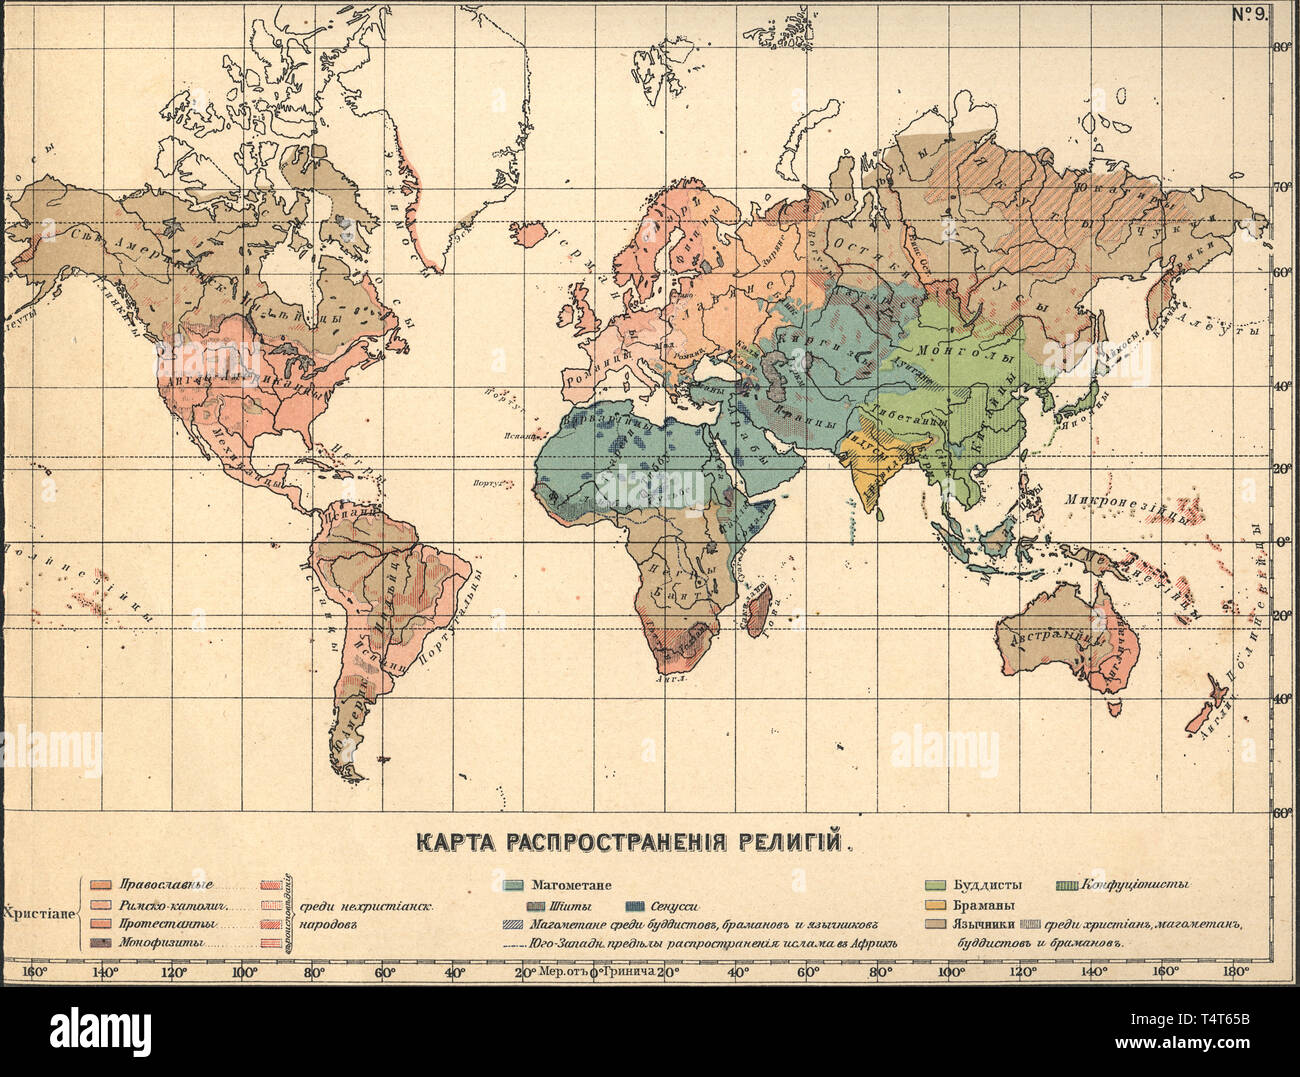 flat world map with longitude and latitude